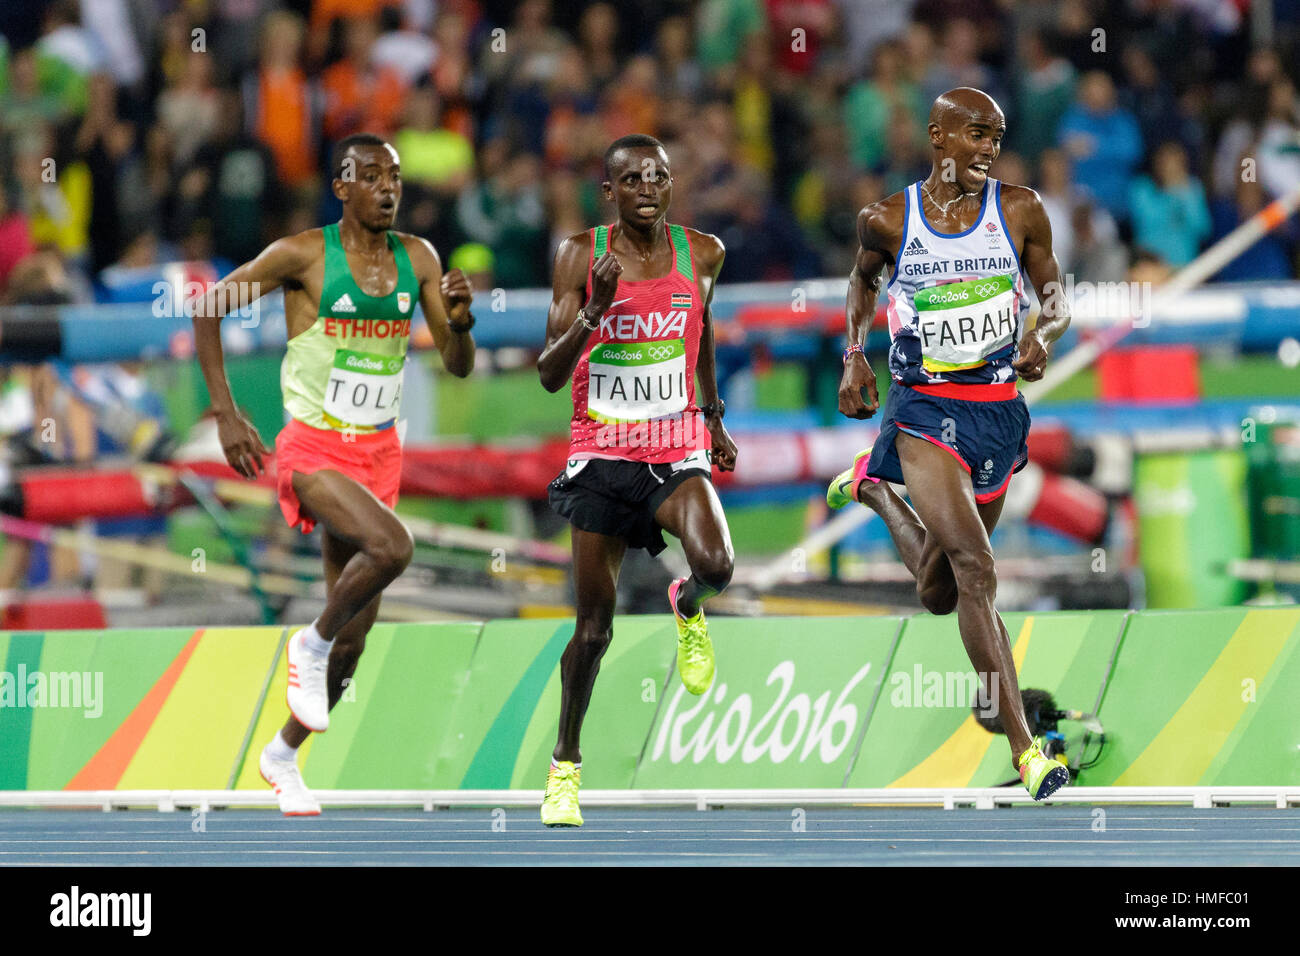 Río de Janeiro, Brasil. 13 de agosto de 2016. Mo Farah (GBR) gana la medalla de oro en los hombres de 10.000m en los Juegos Olímpicos de Verano de 2016. ©Paul J. Sutton/PCN Foto de stock